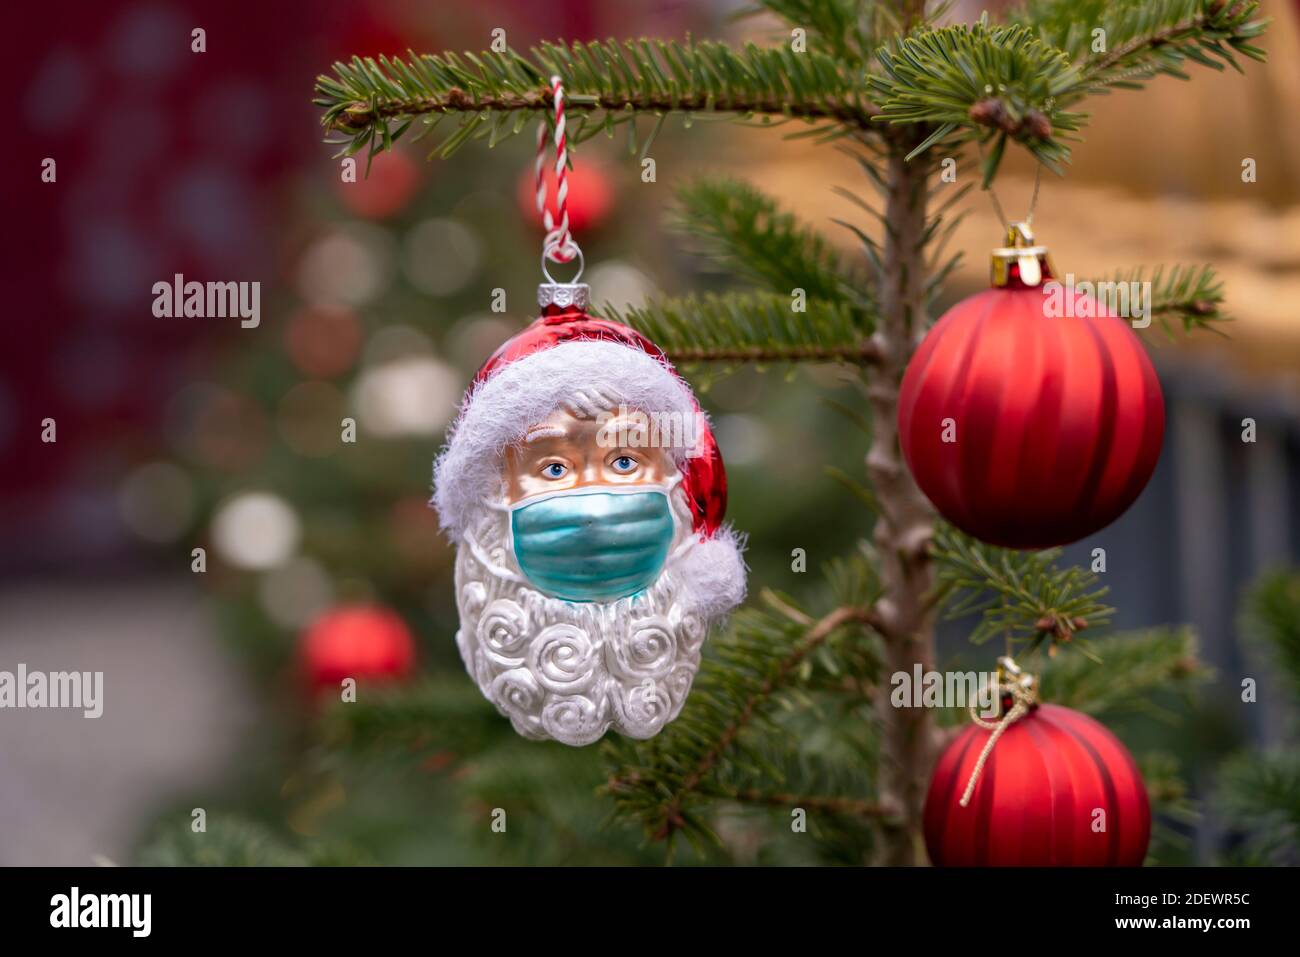 Symbolisches Bild von Weihnachten in der Corona-Krise, Vater Weihnachtsfigur, Weihnachtsmann, Weihnachtsbaum Dekorationen, mit Mund-Nase-Maske, Alltag ma Stockfoto